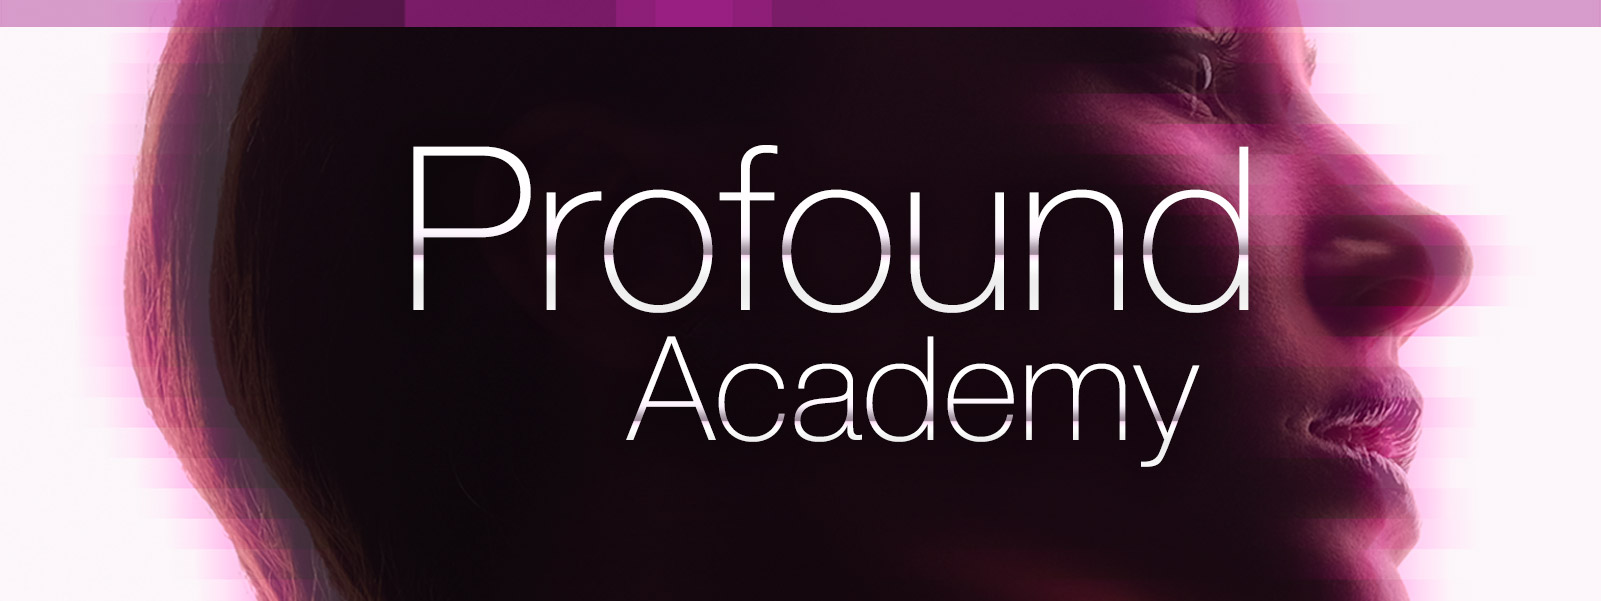 Profound-Academy-header-31821.jpg